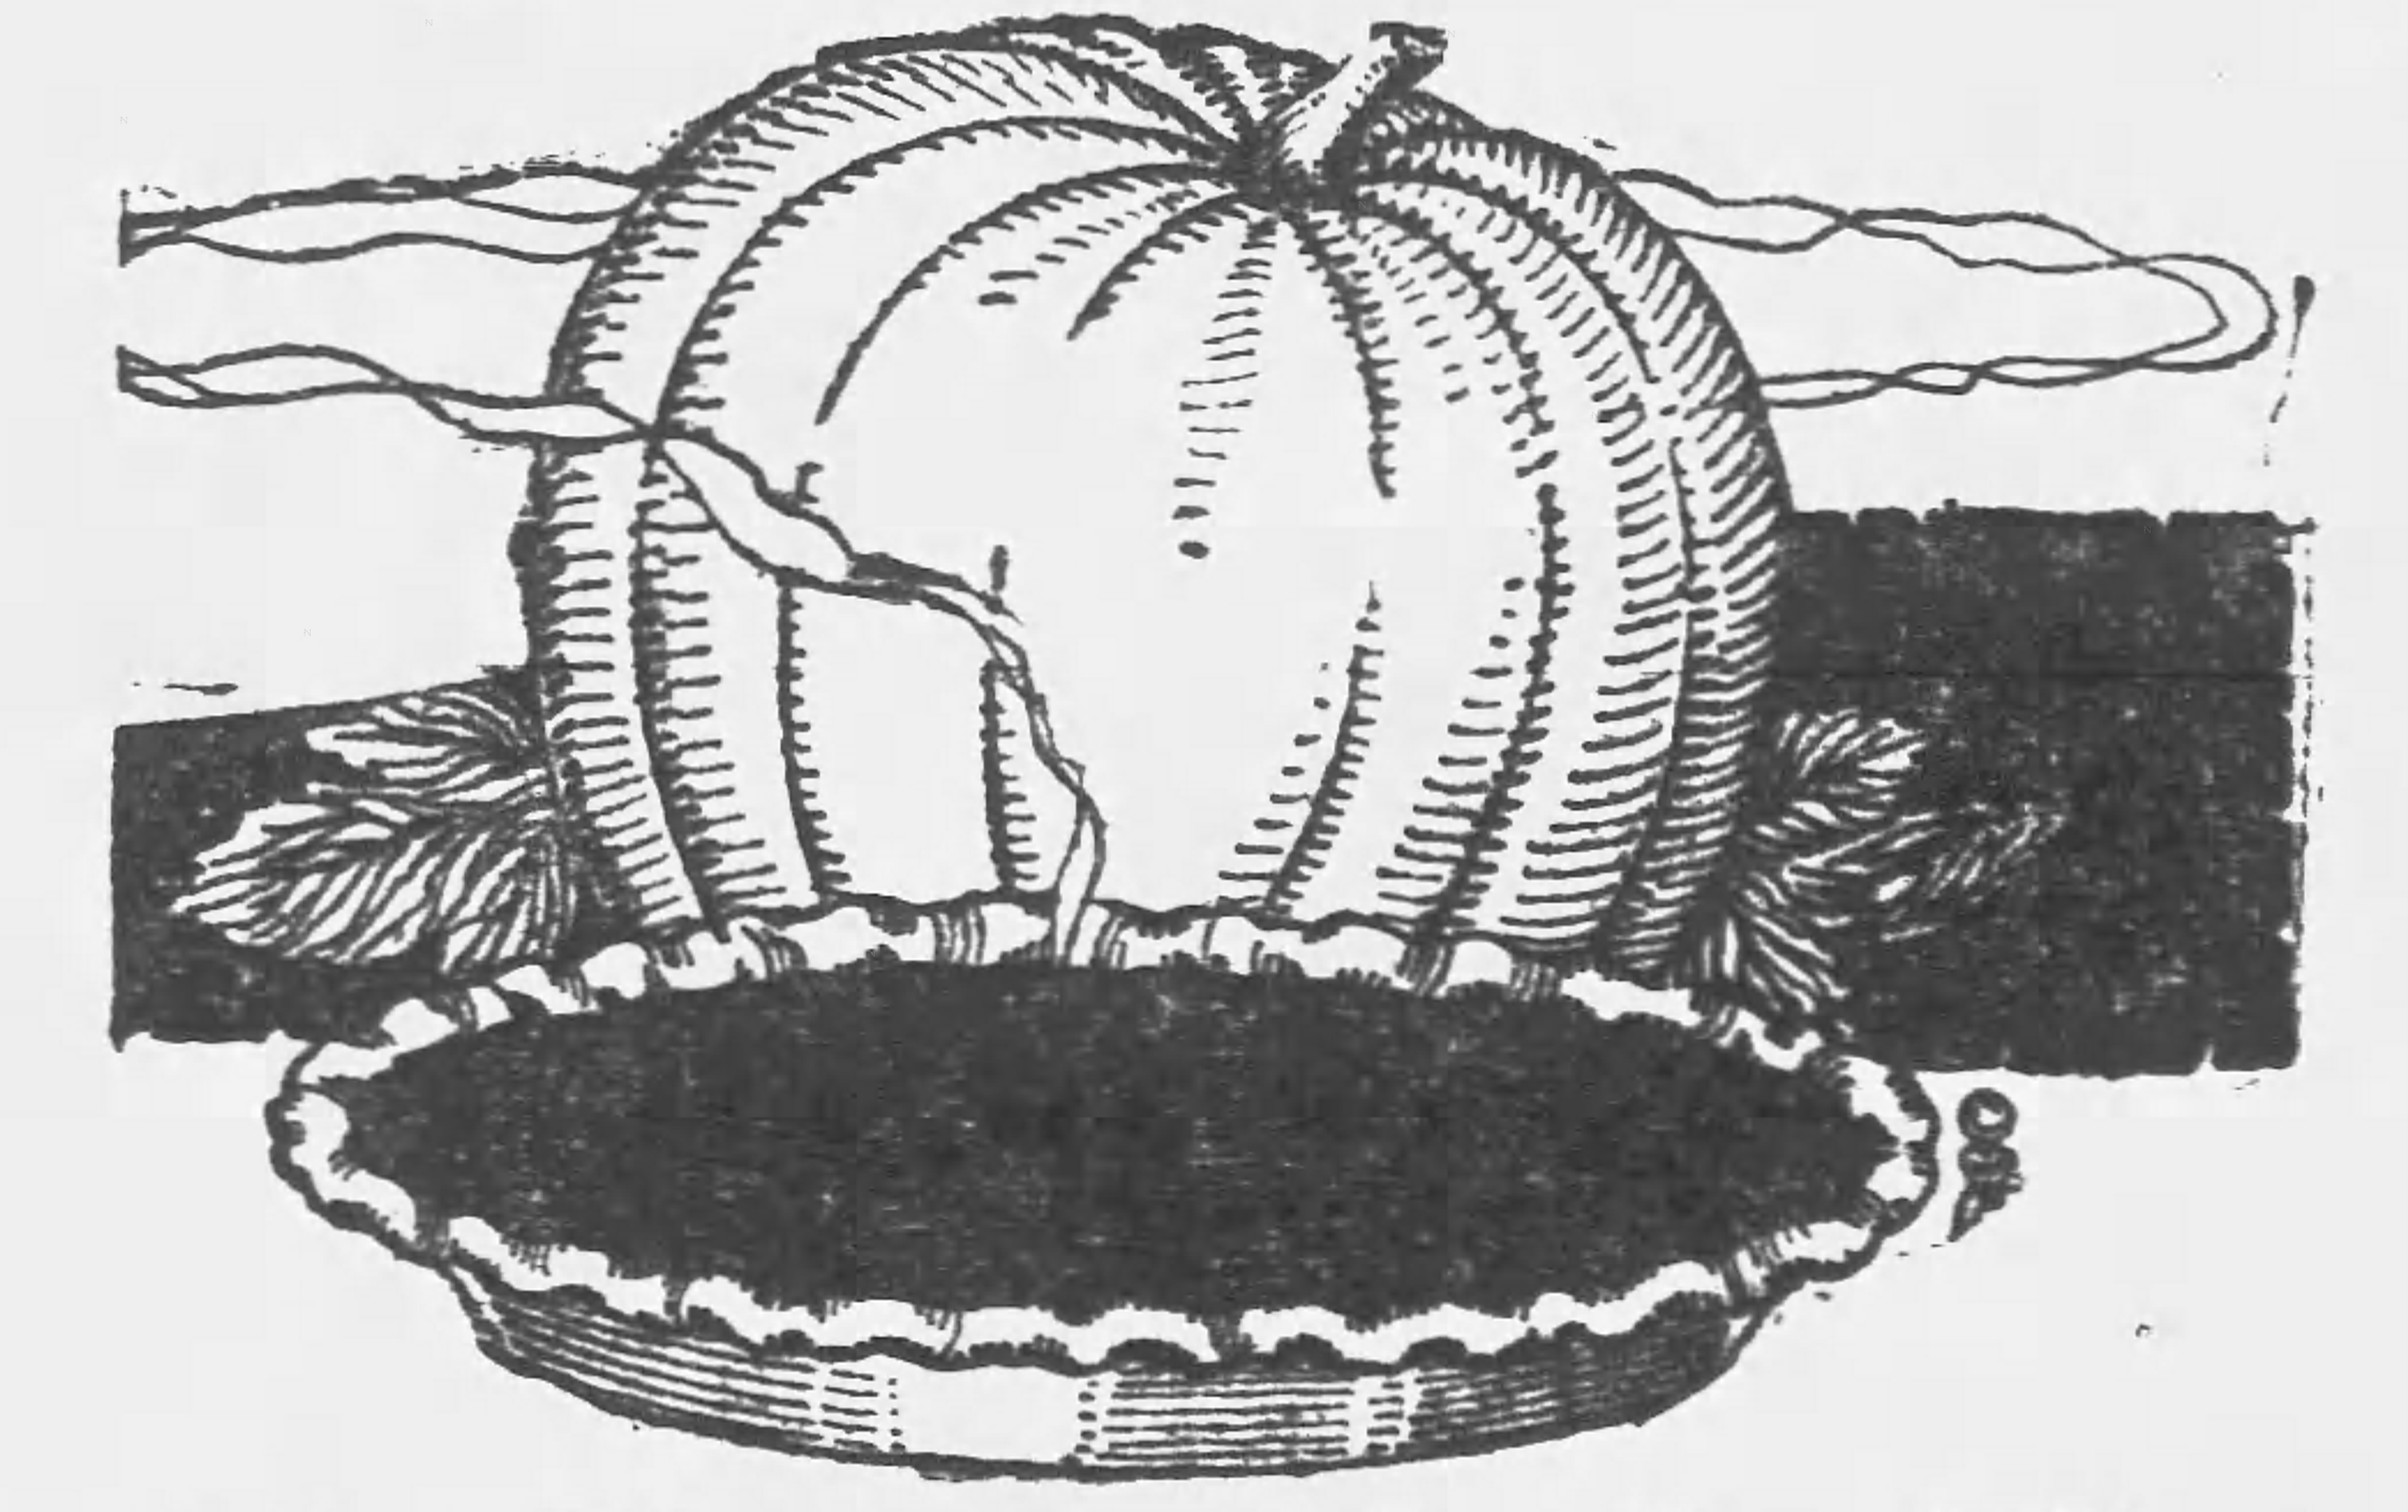 Pumpkin Pie recipe image, 1921(Camden Daily Courier, via Newspapers.com)